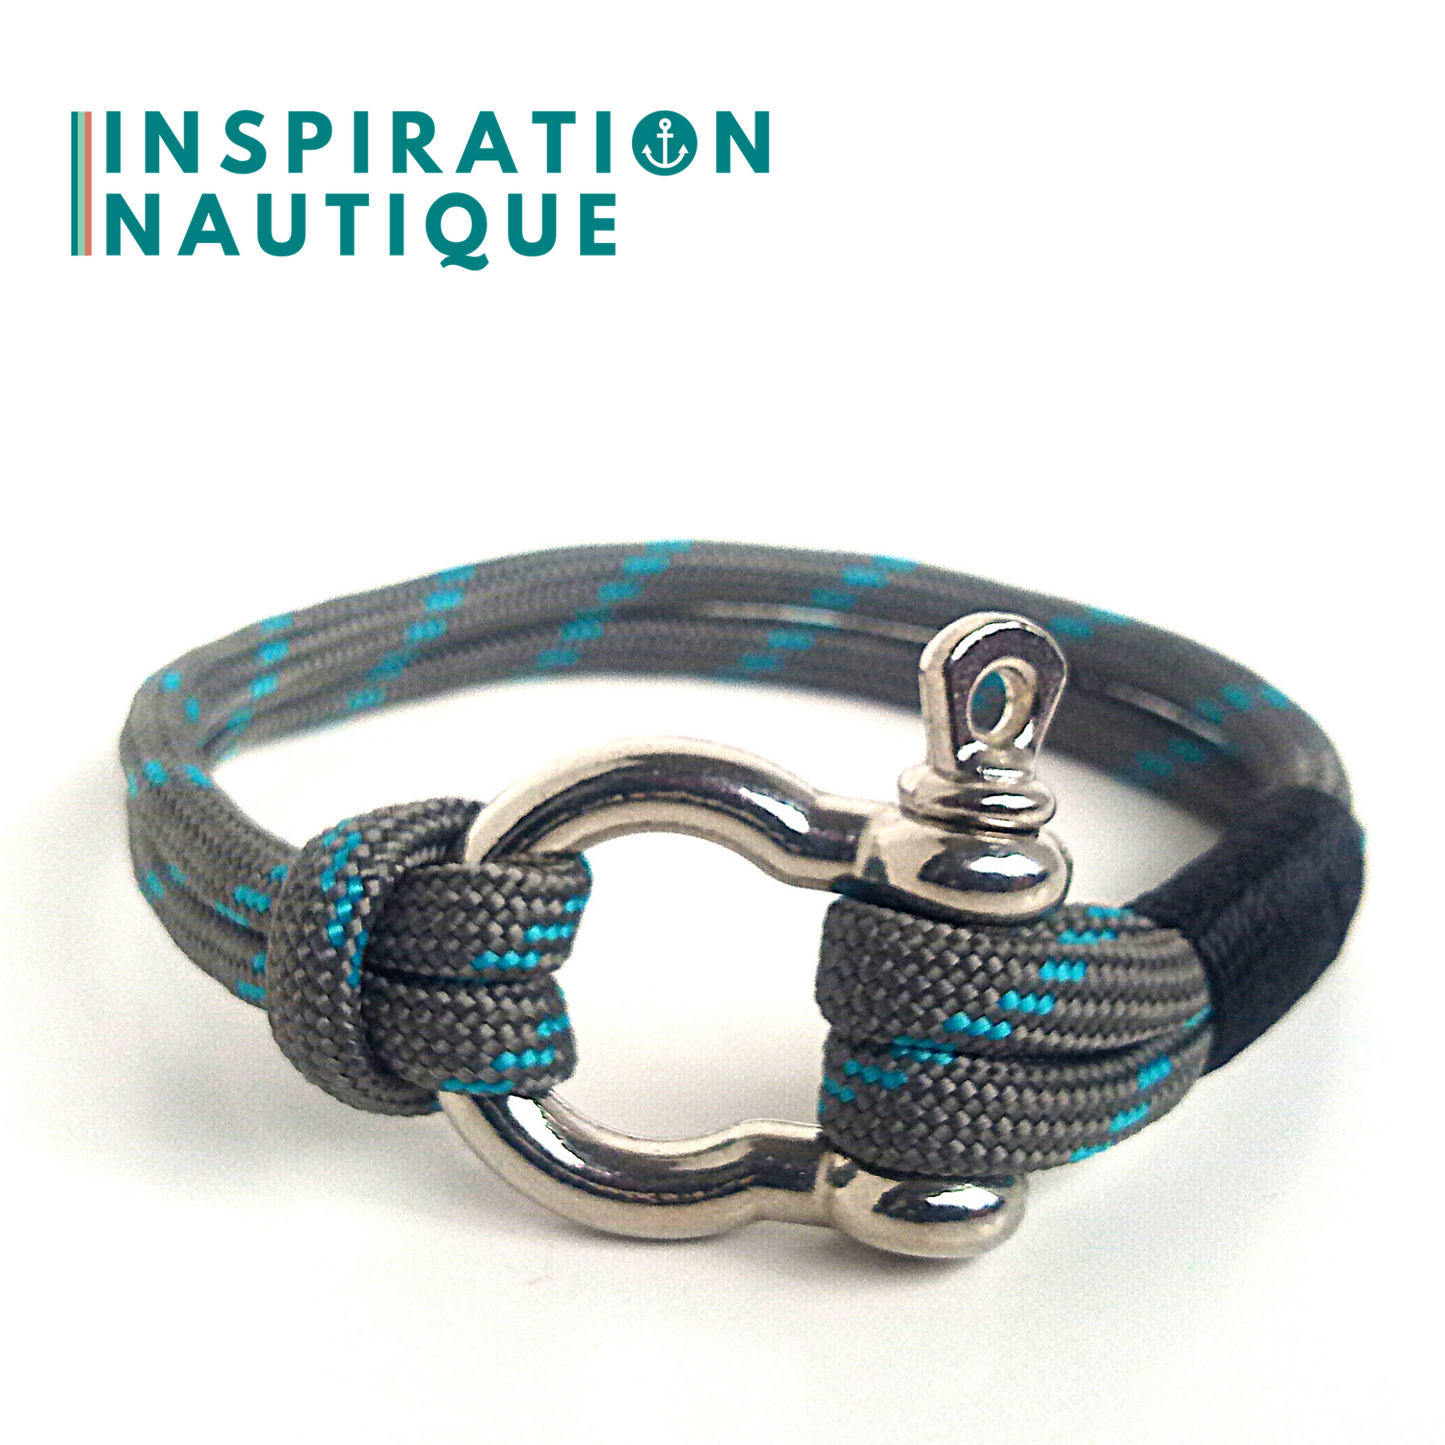 Bracelet marin avec manille en paracorde 550 et acier inoxydable, Gris avec traceur turquoise, Surliure noire, Medium-Large